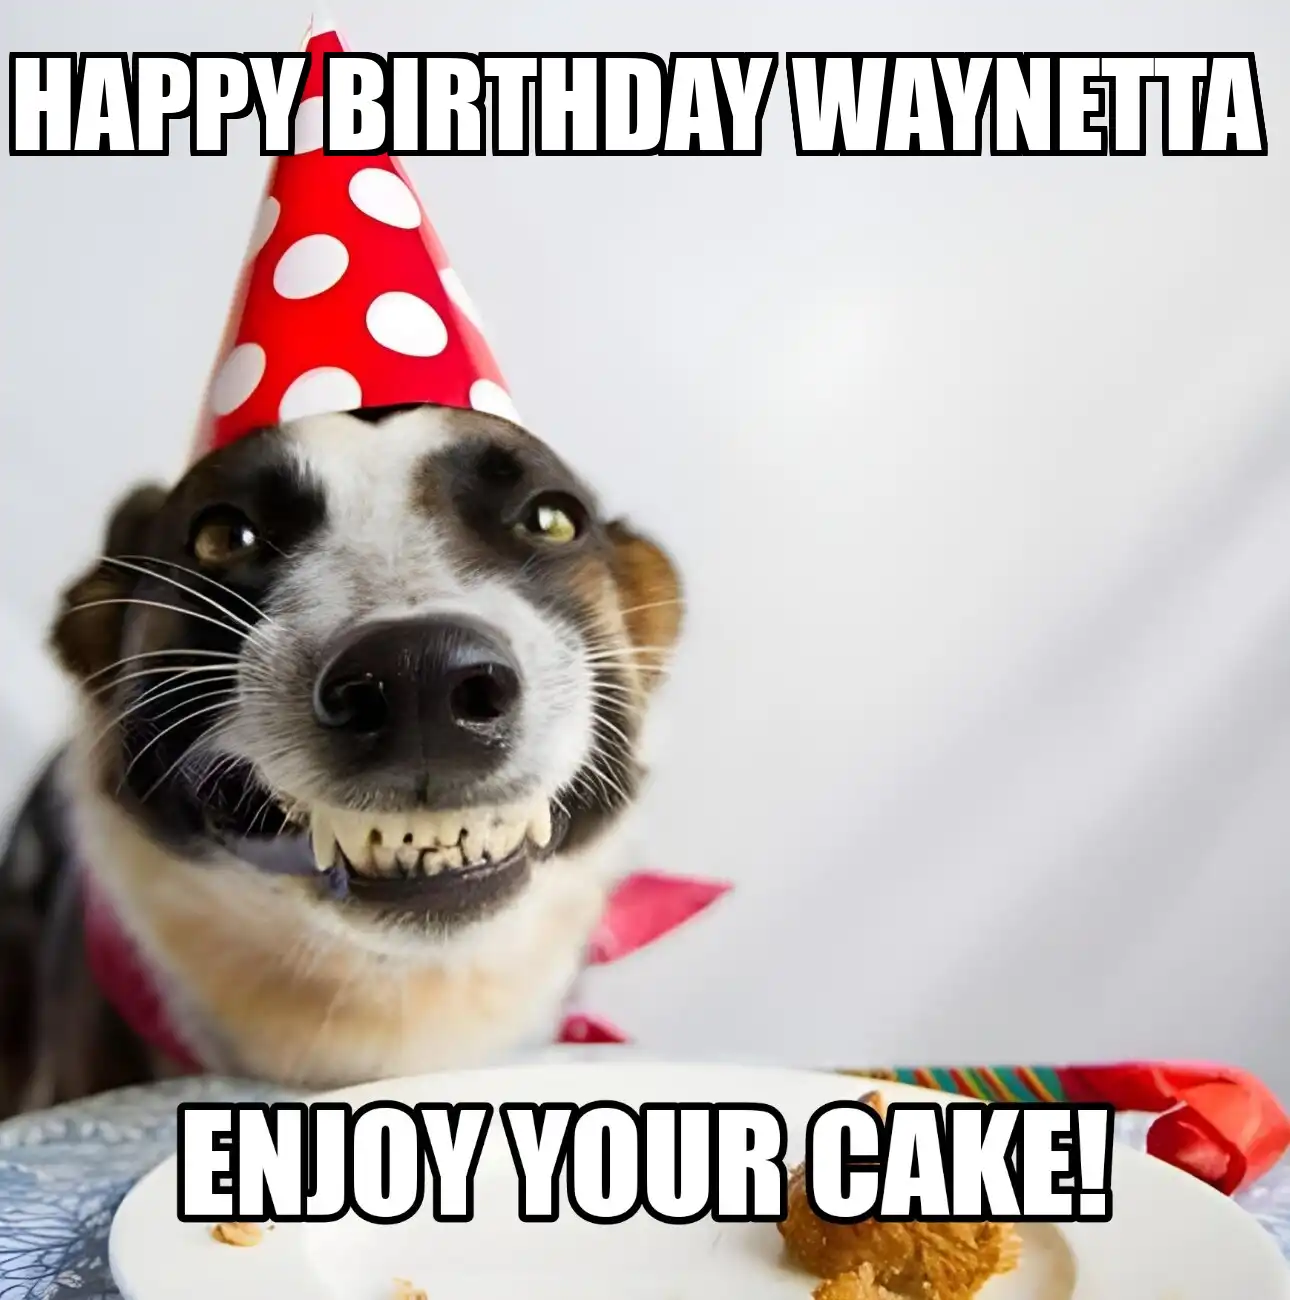 Happy Birthday Waynetta Enjoy Your Cake Dog Meme